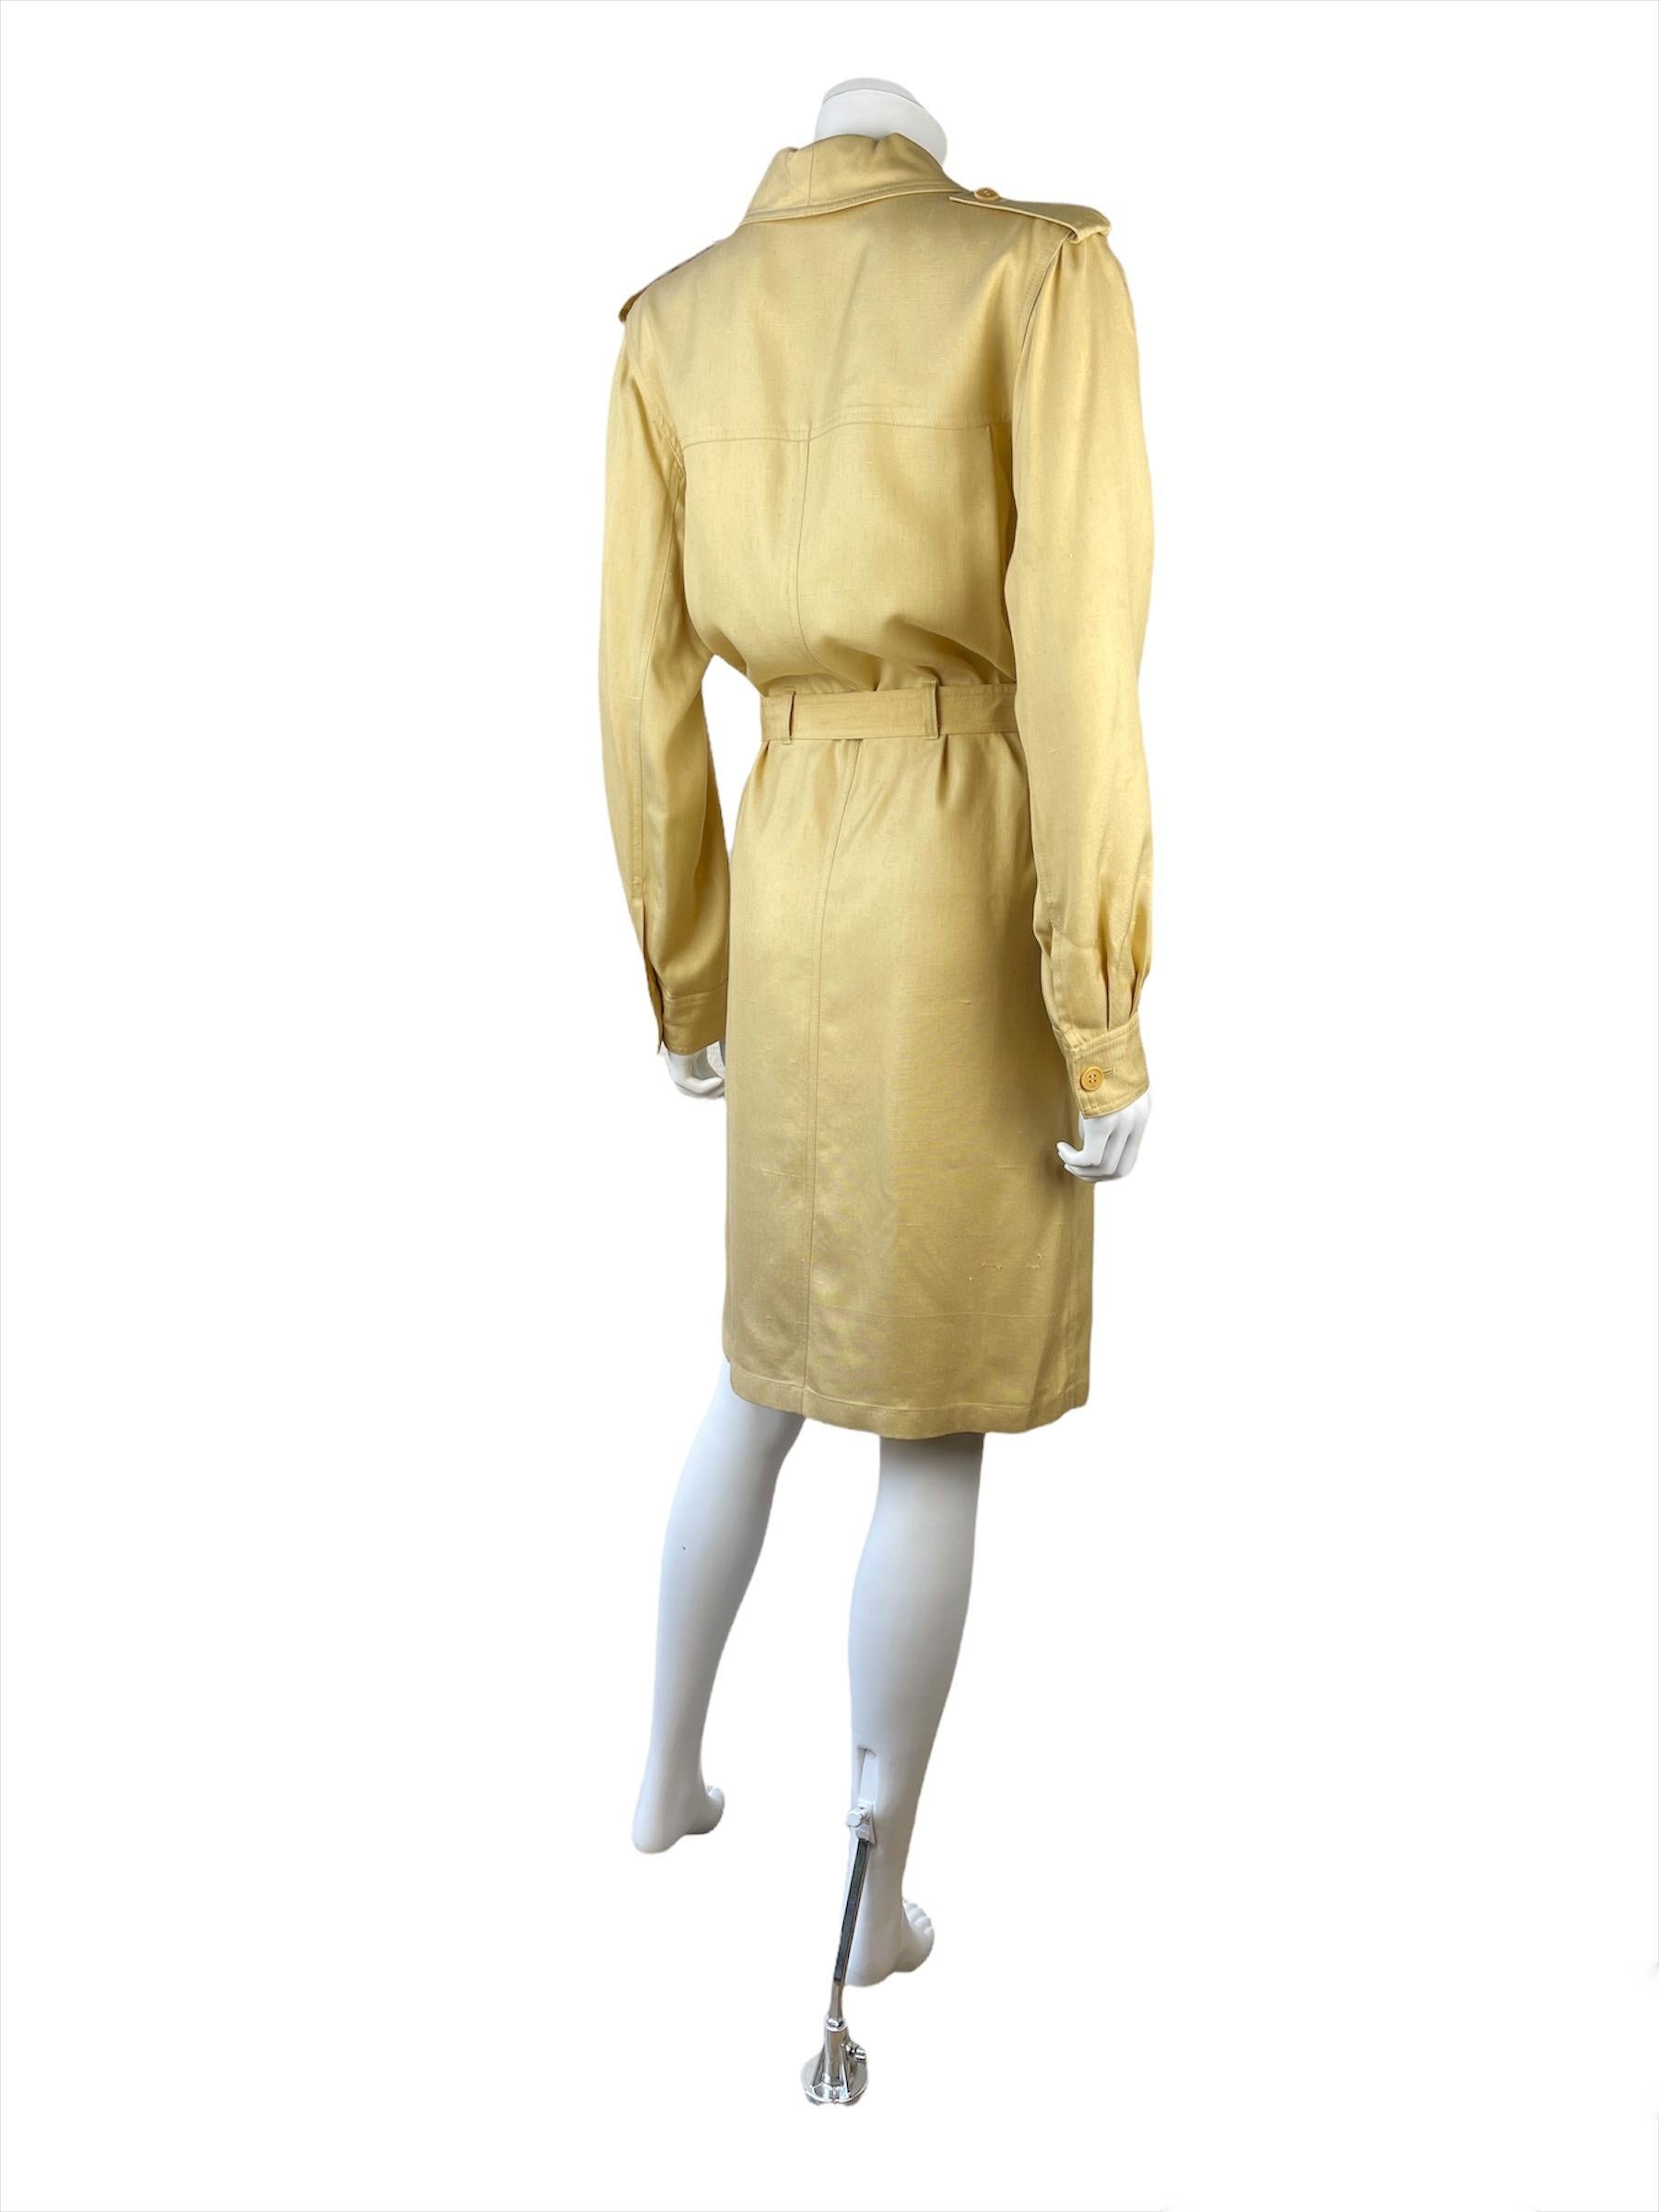 Beige Vintage Yves Saint Laurent Lace-Up Safari Dress